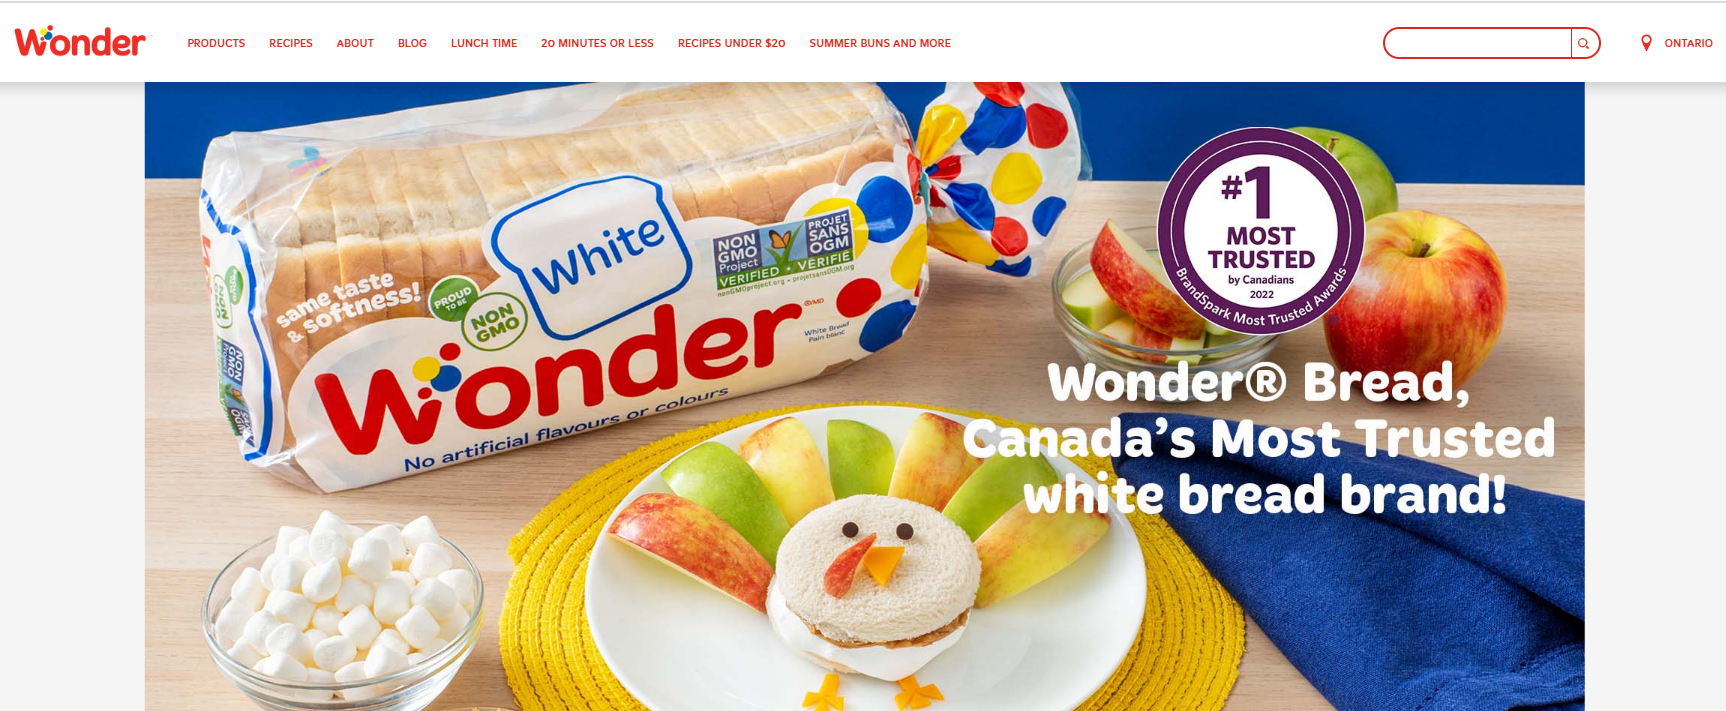 Wonderbread website 1.png